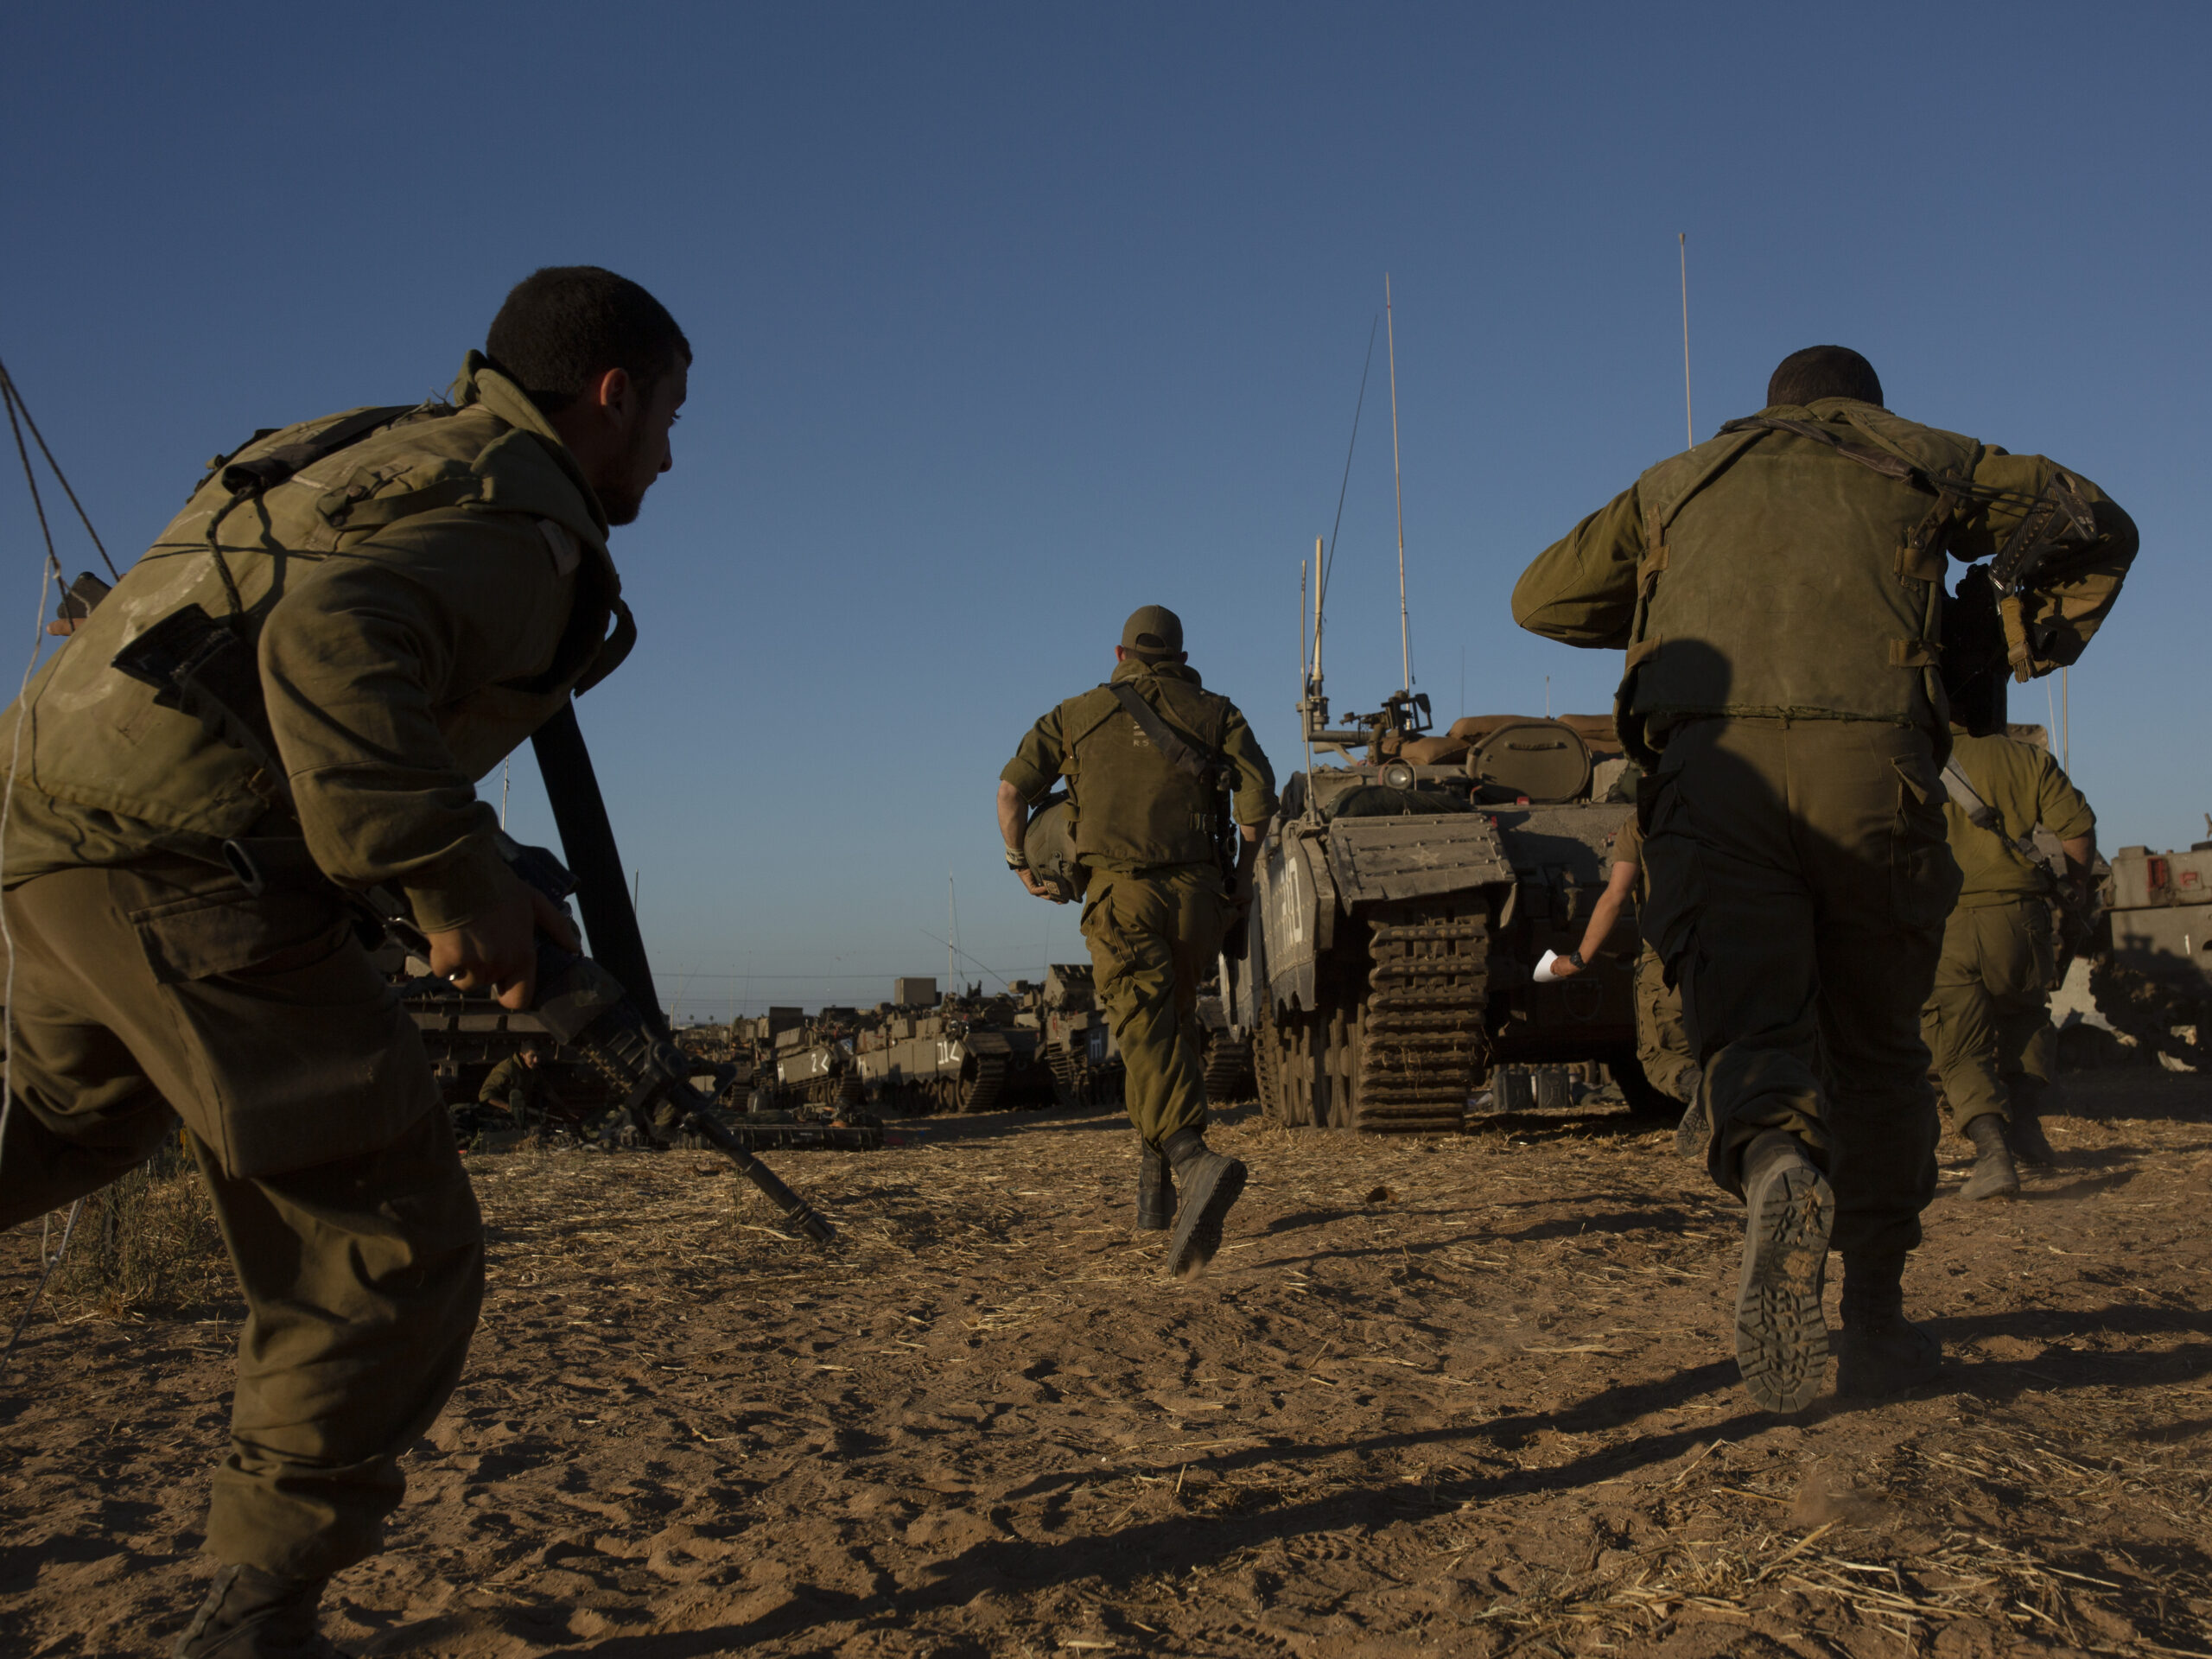 Операция израиля в секторе. Израильский солдат. Солдаты Израиля. Военная операция Израиля. Палестино-израильский конфликт.